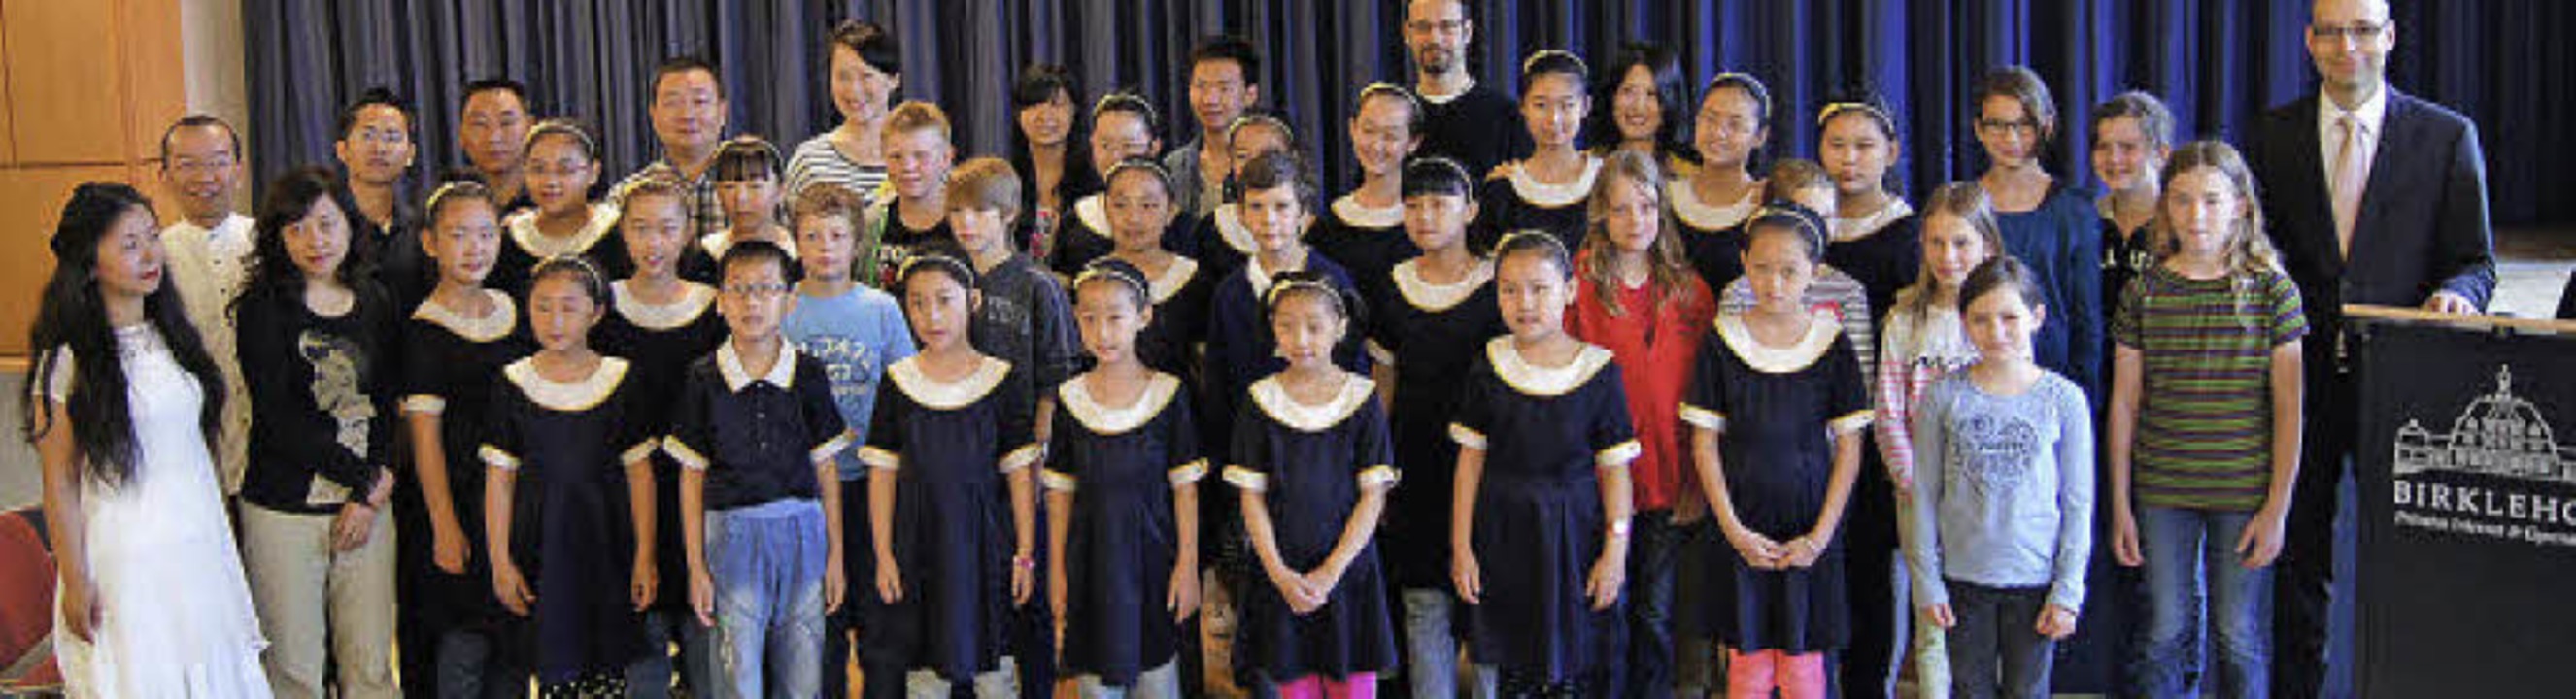 Was Gruppenfoto  auf chinesisch heißt?...ich der Mitte mit  Birklehofschülern.   | Foto: Birklehof